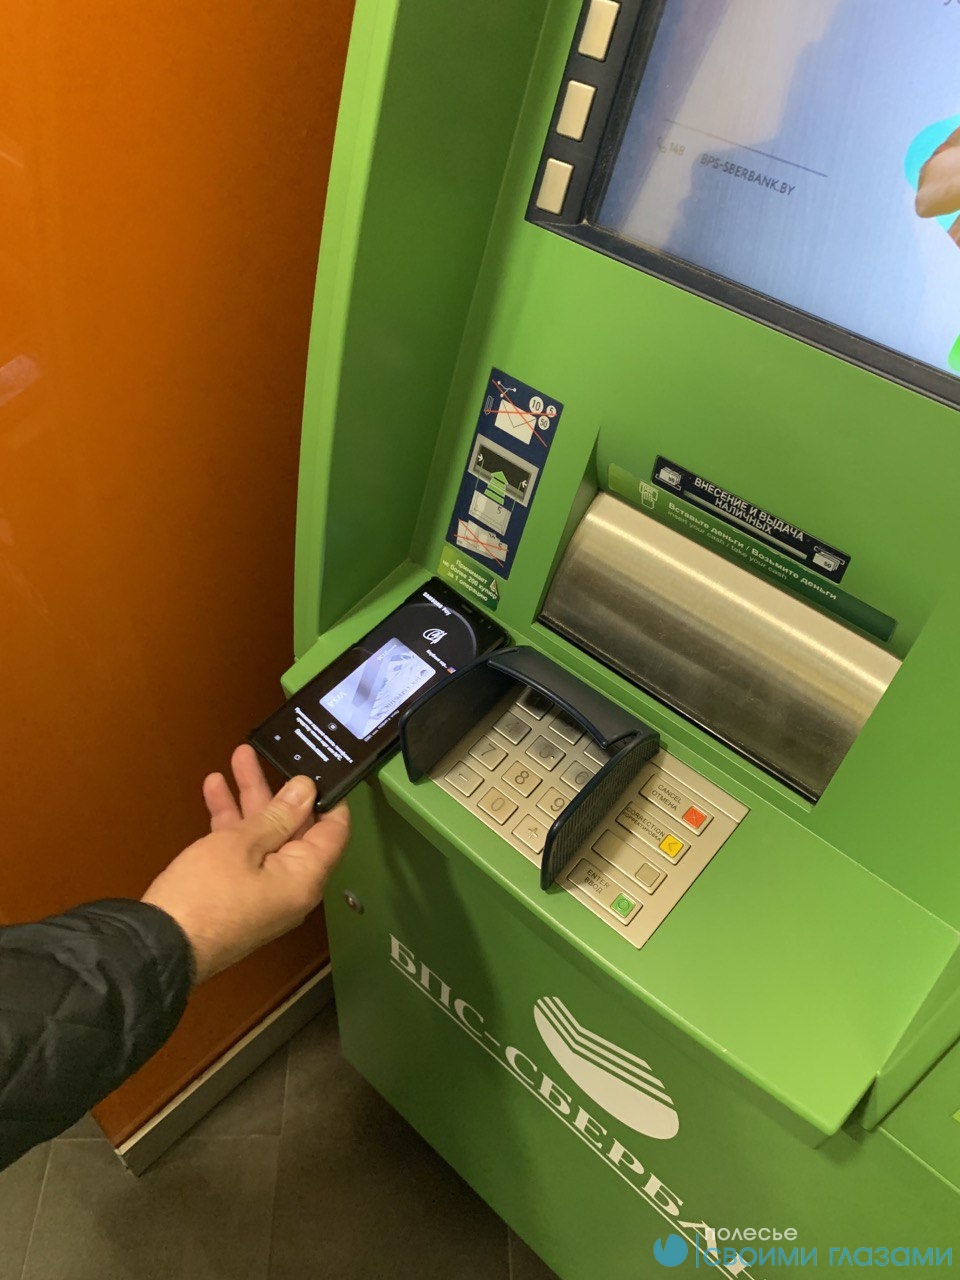 фото банкомат сбербанка куда прикладывать карту